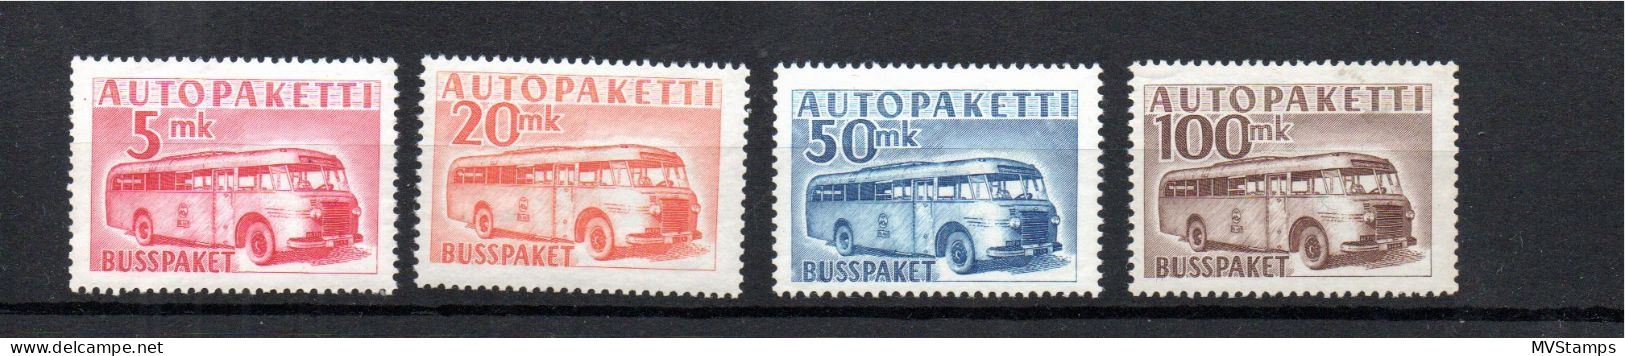 Finnland 1949 Satz APM 6/9 Auto-Paketmarken/Autopaketti Postfrisch - Envios Por Bus